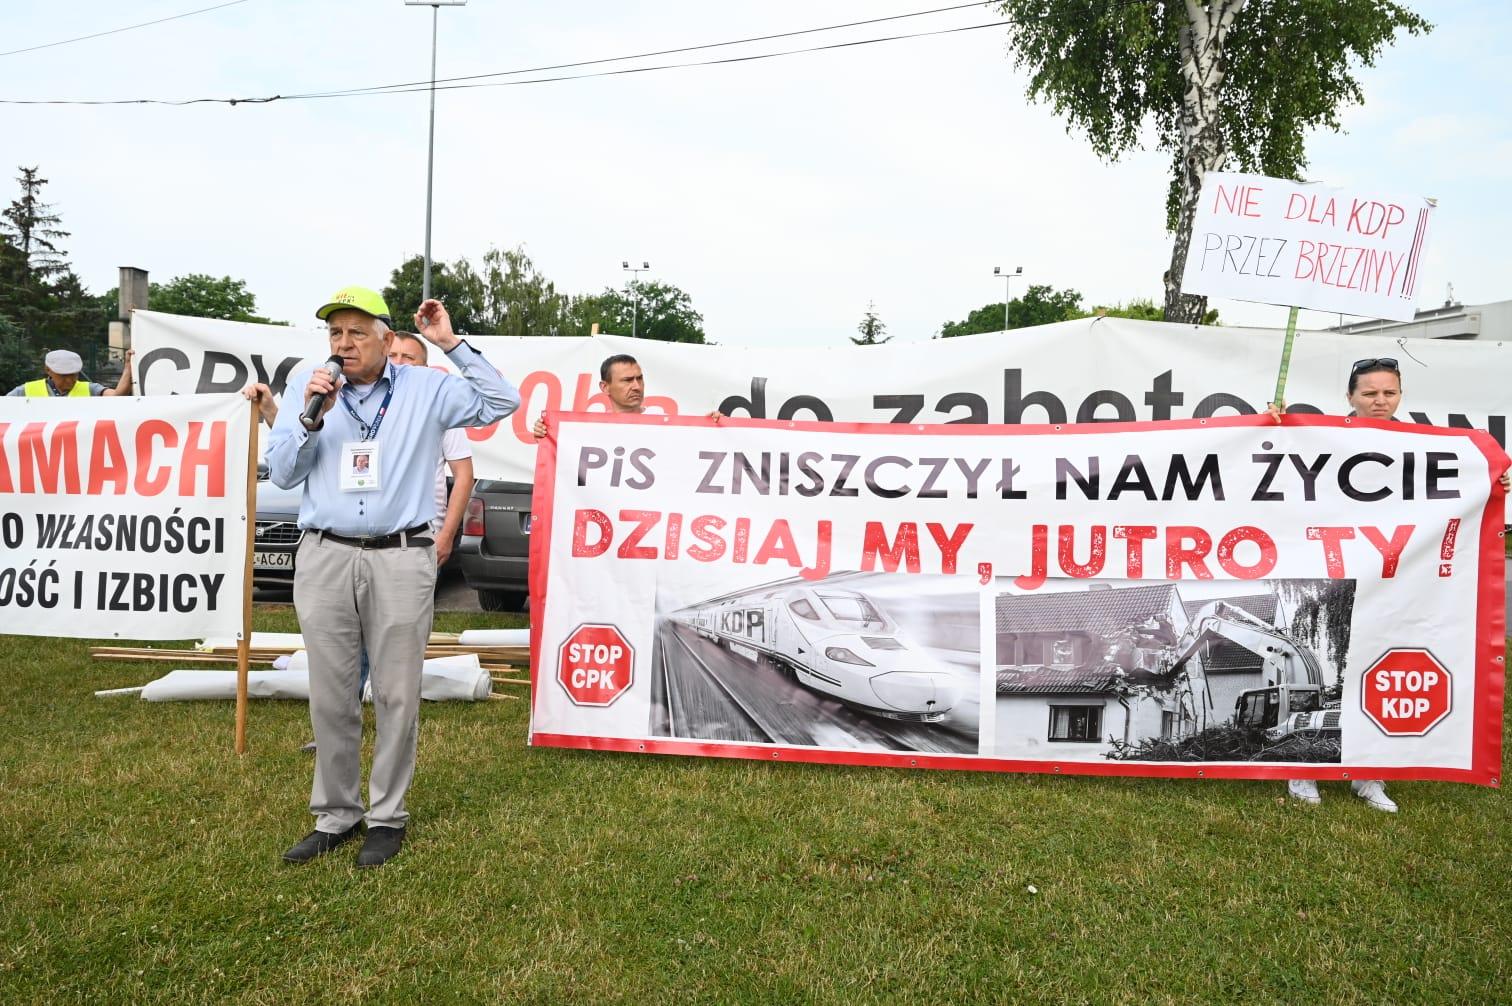 protestujący z transparentem: PiS zniszczył nam życie. Dzisiaj my, jutro ty!. Stop KDP